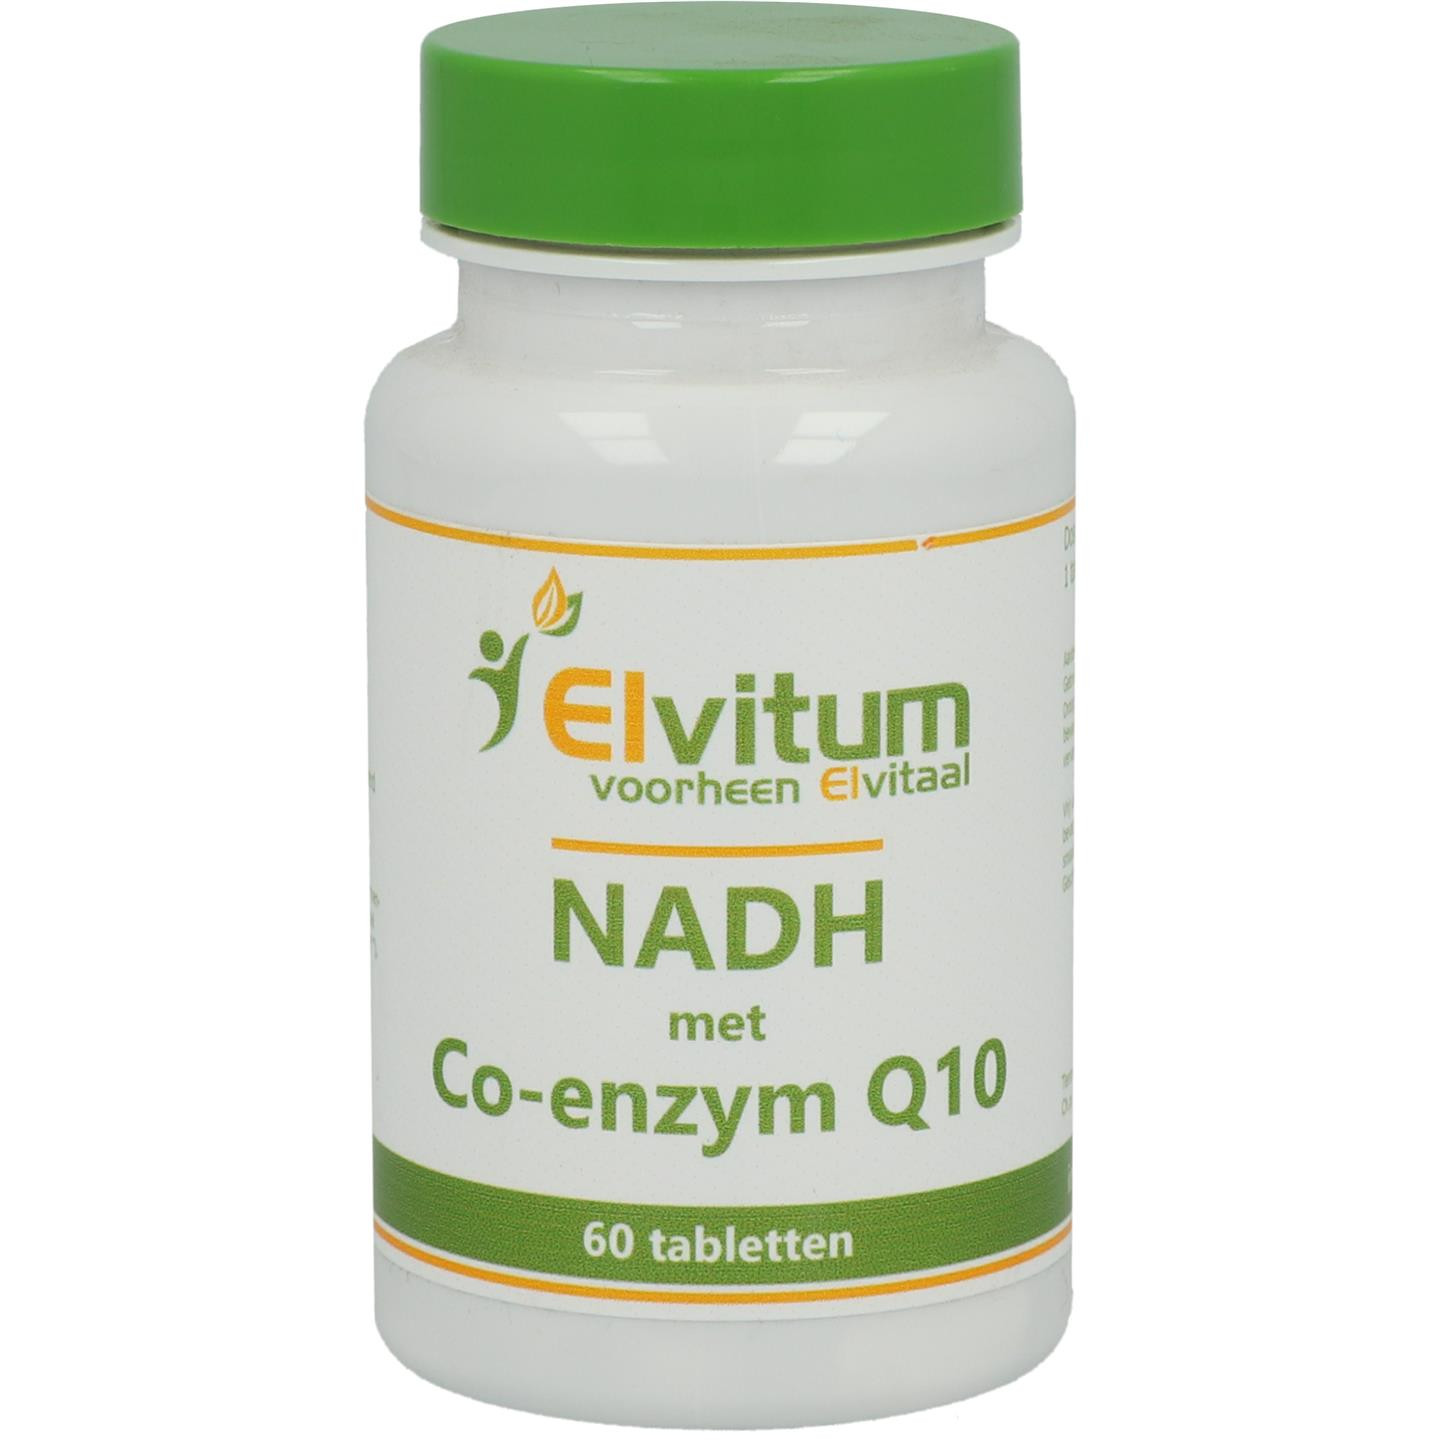 NADH met Co-enzym Q10